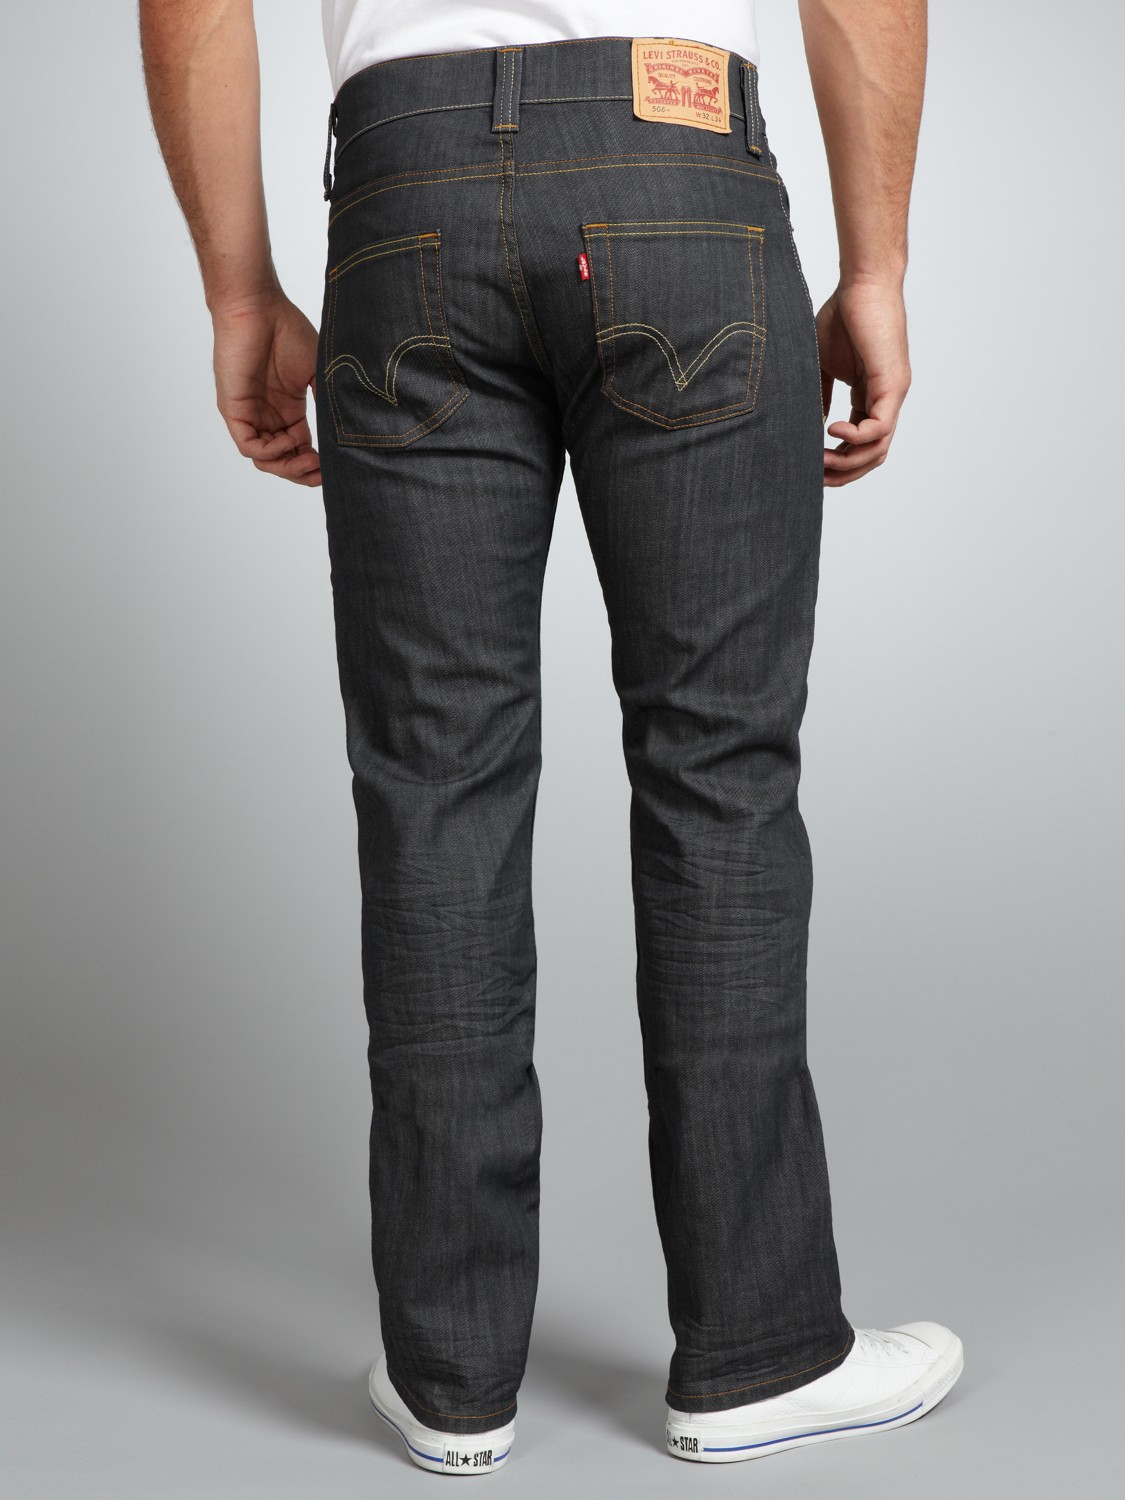 Все модели джинсов levis мужские с описанием